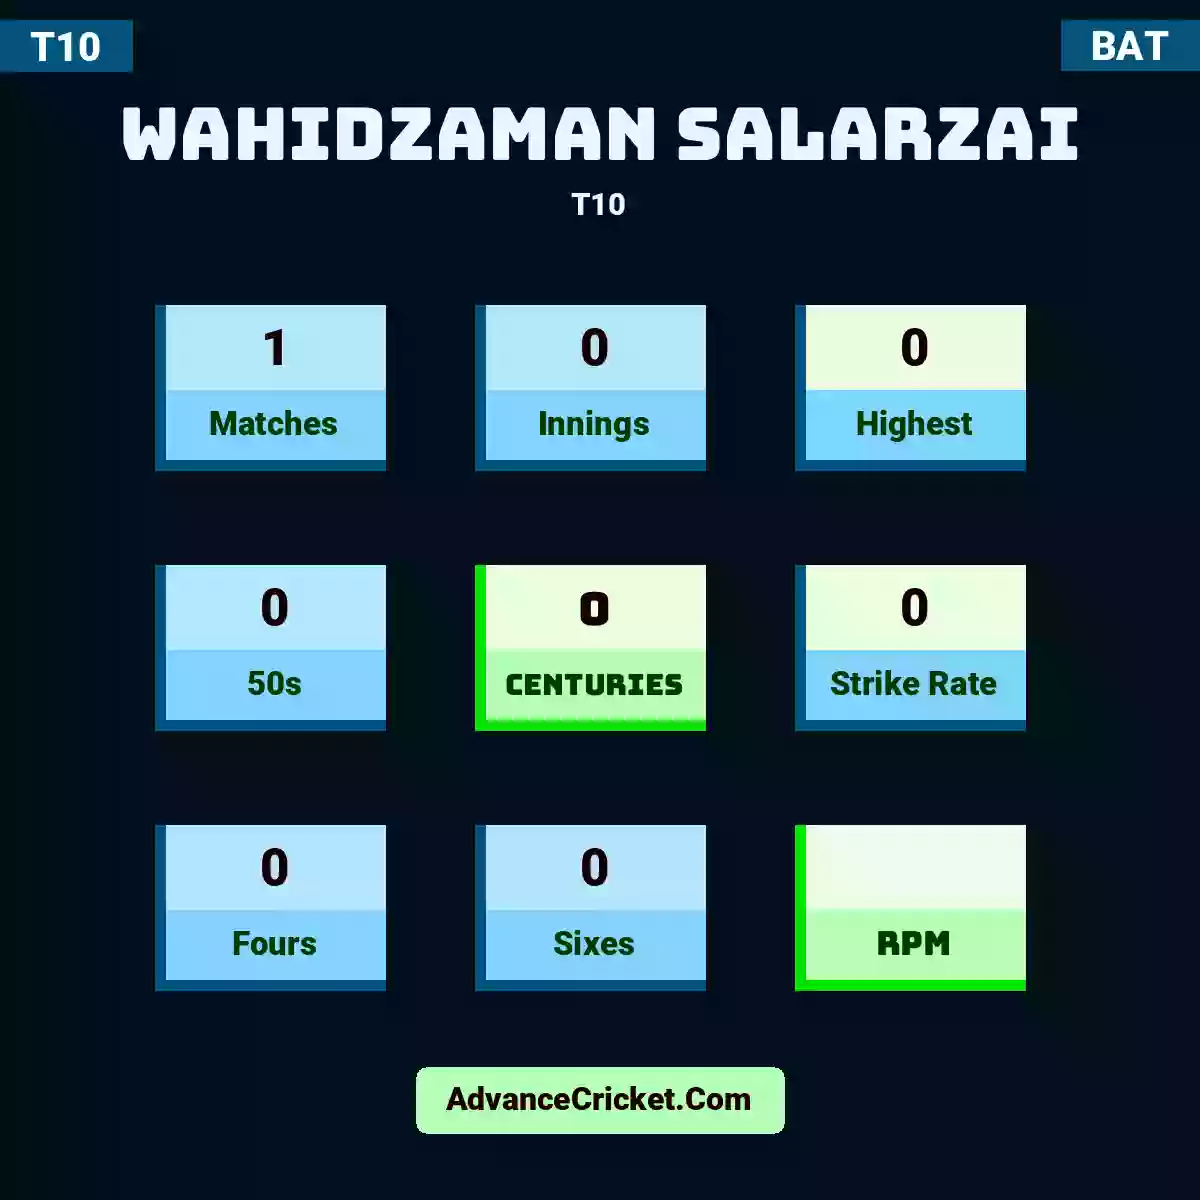 Wahidzaman Salarzai T10 , Wahidzaman Salarzai played 1 matches, scored 0 runs as highest, 0 half-centuries, and 0 centuries, with a strike rate of 0. W.Salarzai hit 0 fours and 0 sixes.